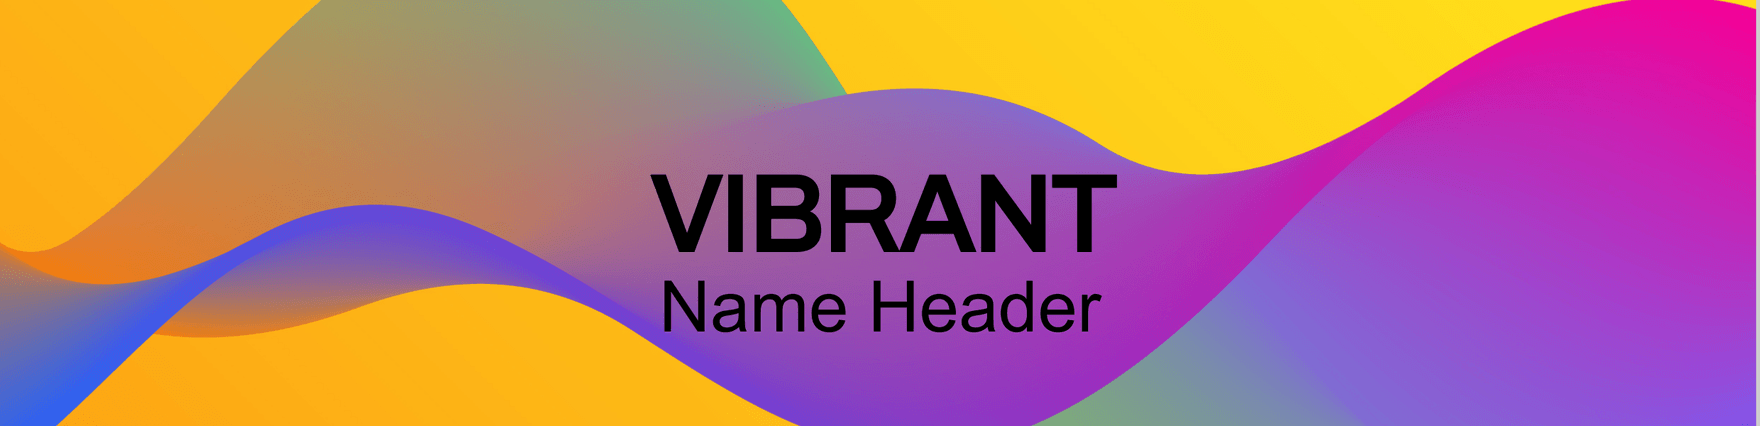 Vibrant Name Header